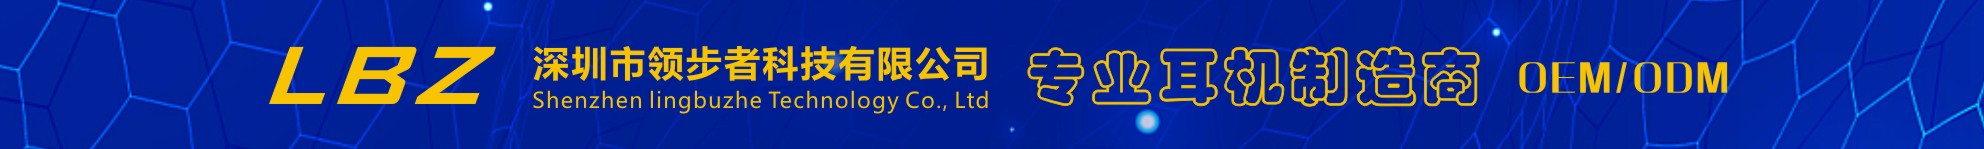 深圳市领步者科技有限公司